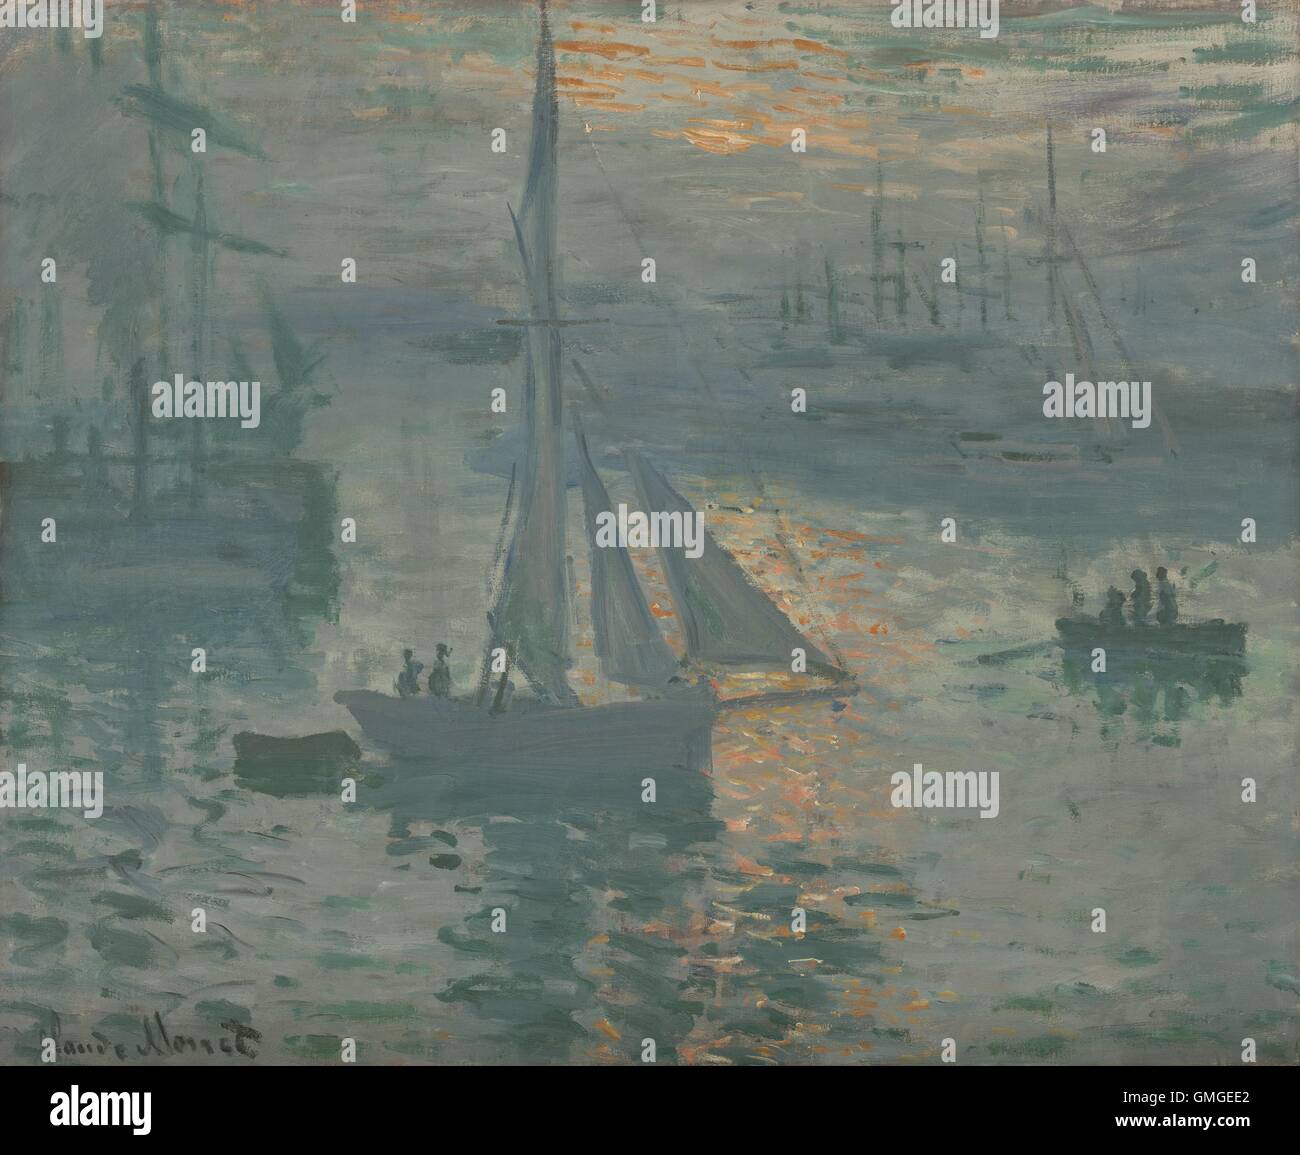 Sunrise (Marine), par Claude Monet, 1873-1874, la peinture impressionniste français, huile sur toile. Claude Monet peint le port côtier Banque D'Images